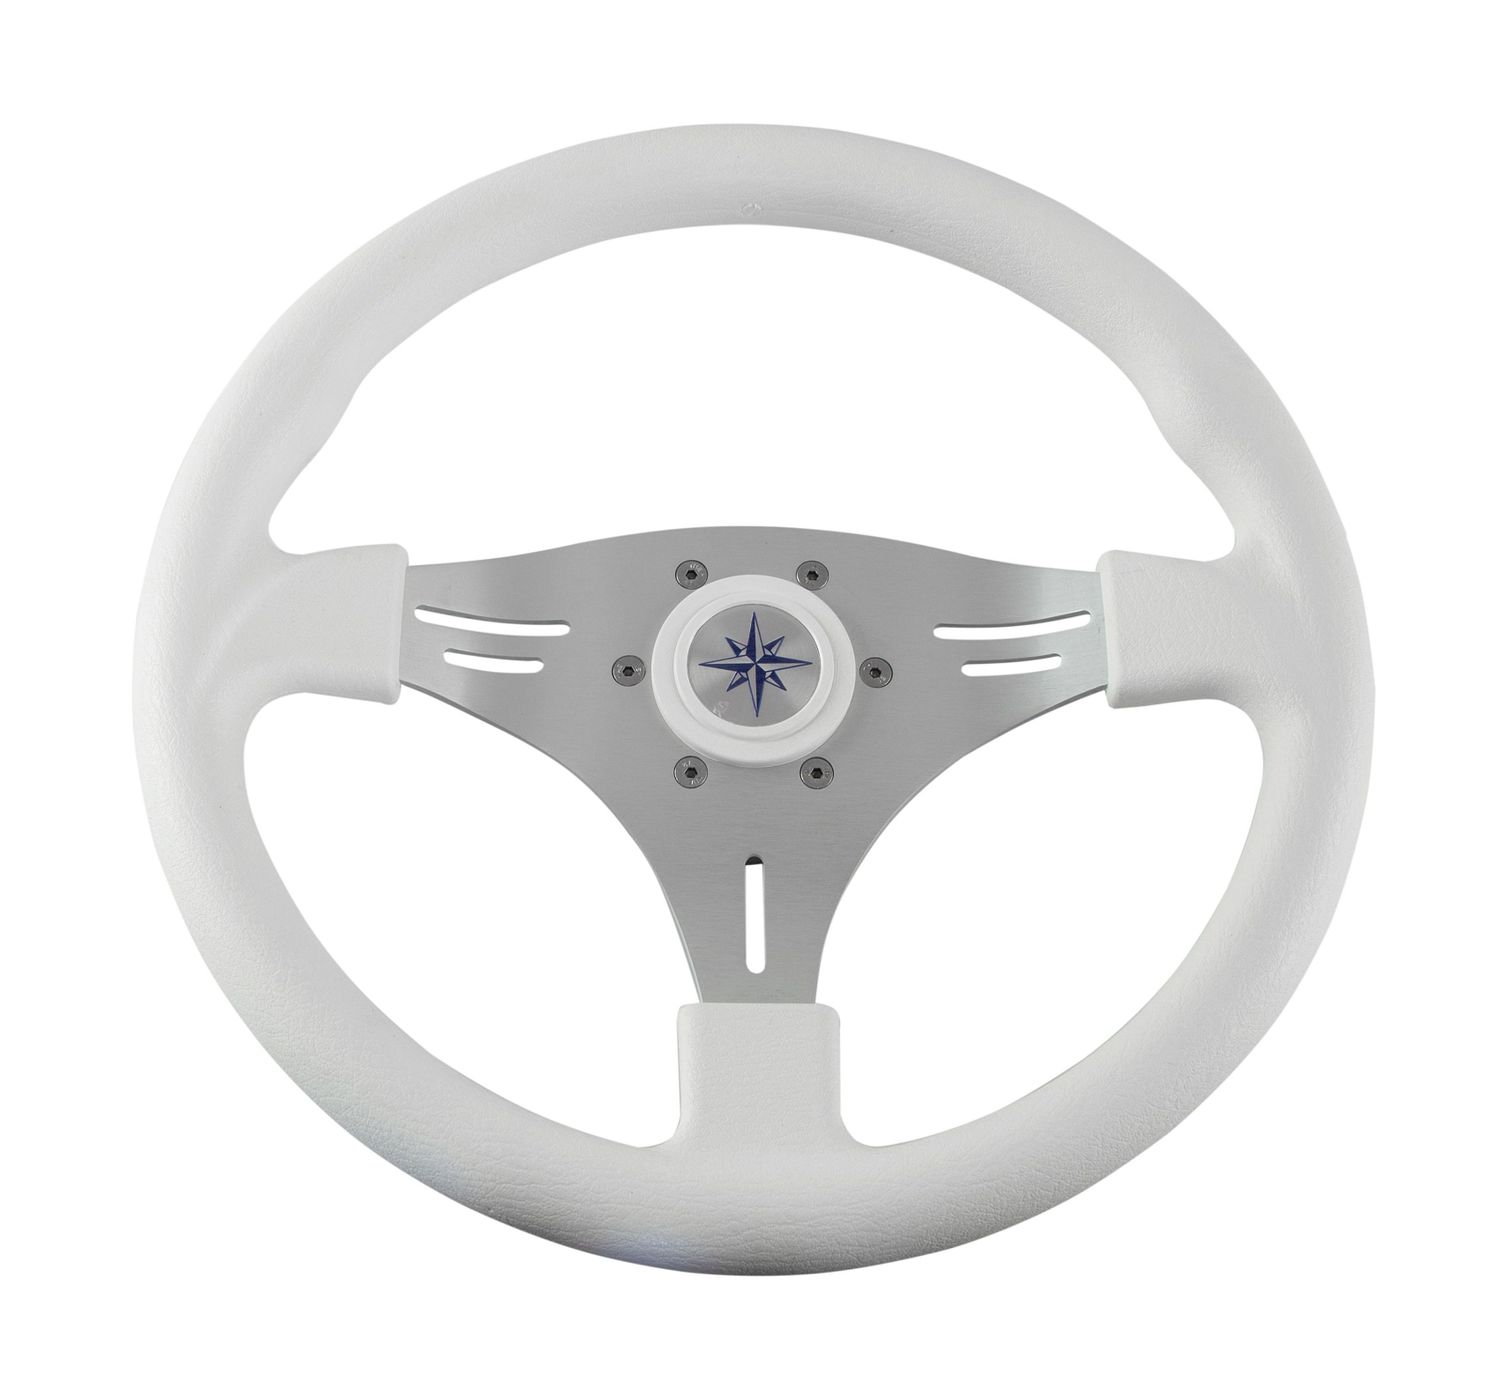 Рулевое колесо MANTA обод белый, спицы серебряные д. 355 мм VN70551-08 рулевое колесо riviera белый обод и спицы д 350 мм vn8001 08